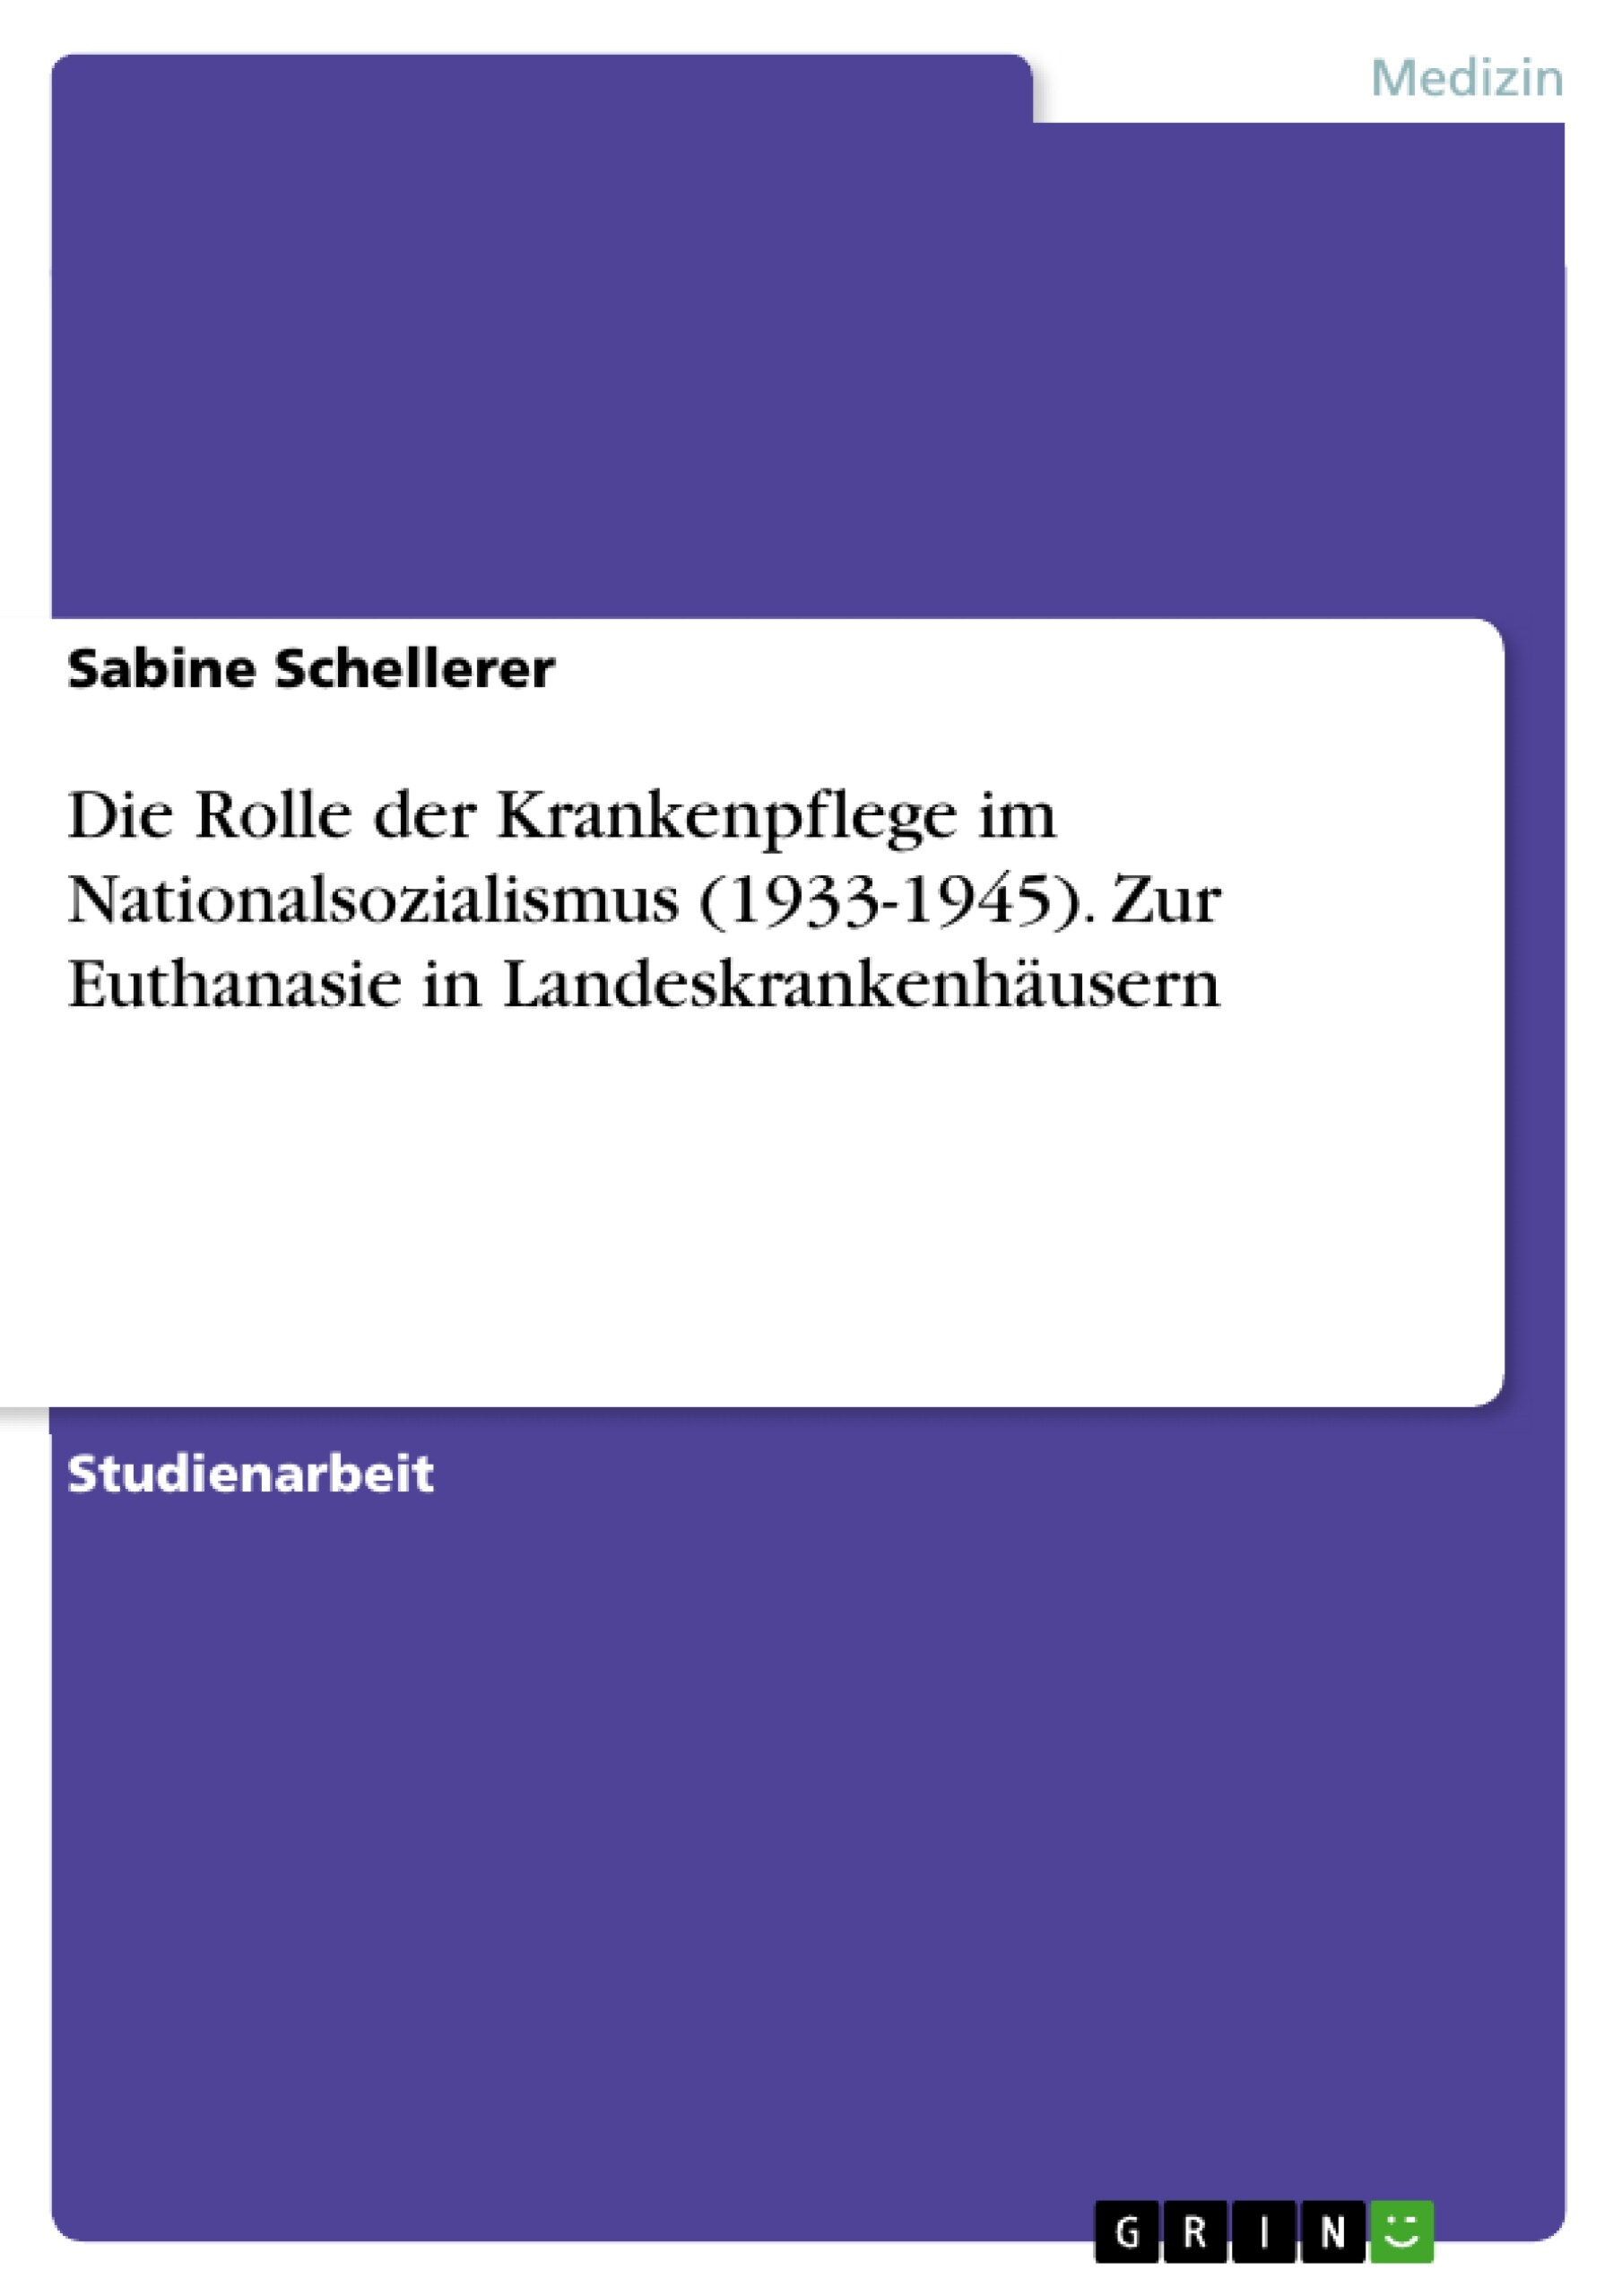 Die Rolle der Krankenpflege im Nationalsozialismus (1933-1945). Zur Euthanasie in Landeskrankenhäusern